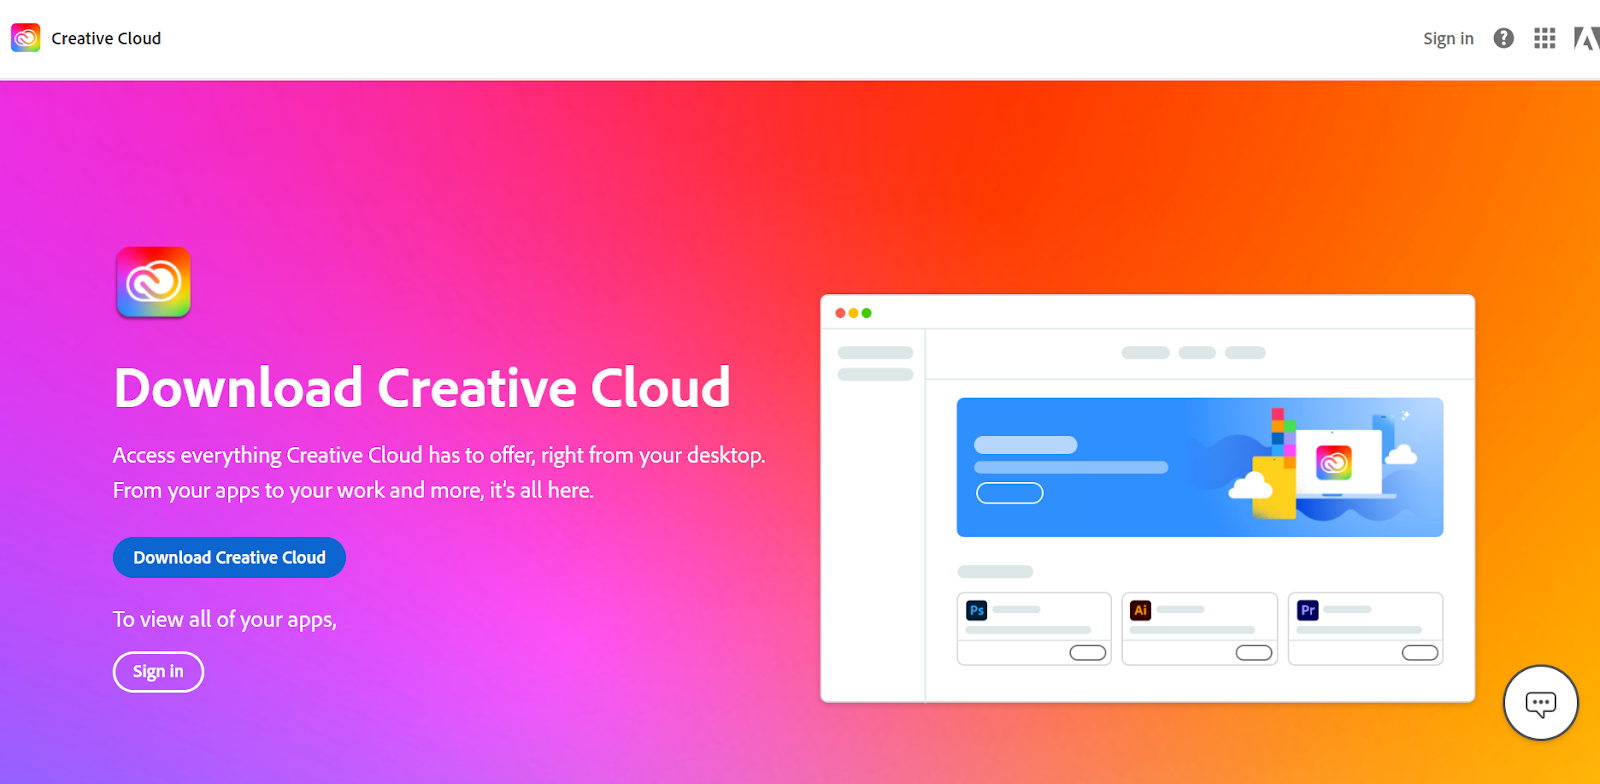 Gõ tìm kiếm trang web Creative Cloud của Adobe